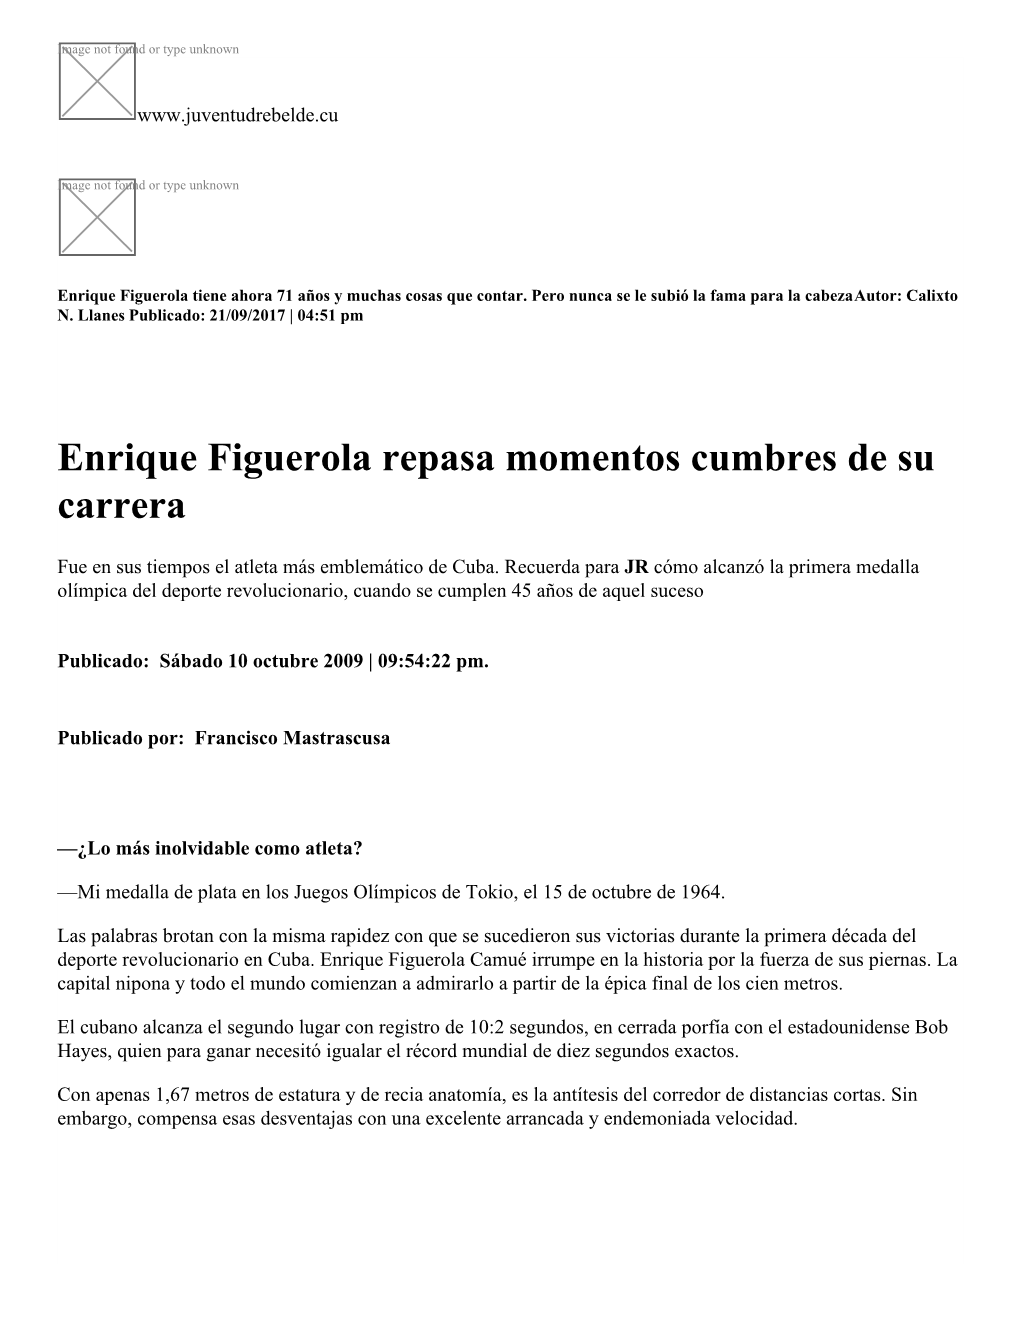 Enrique Figuerola Repasa Momentos Cumbres De Su Carrera